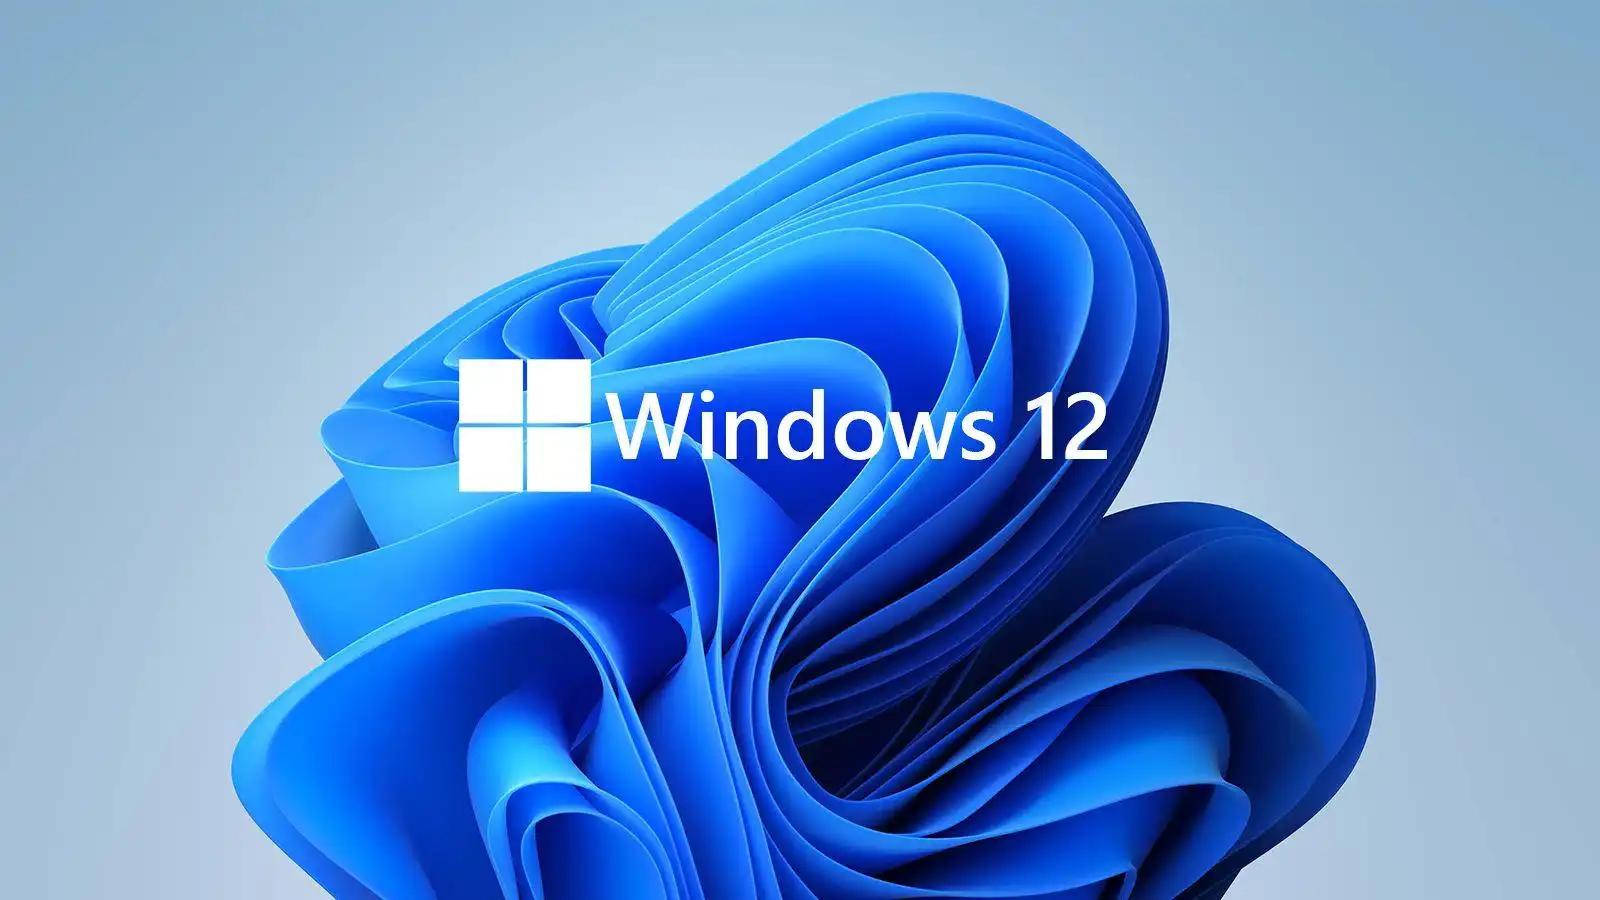 英特尔暗示微软明年将推出 Win12 系统，刺激 PC 换代需求